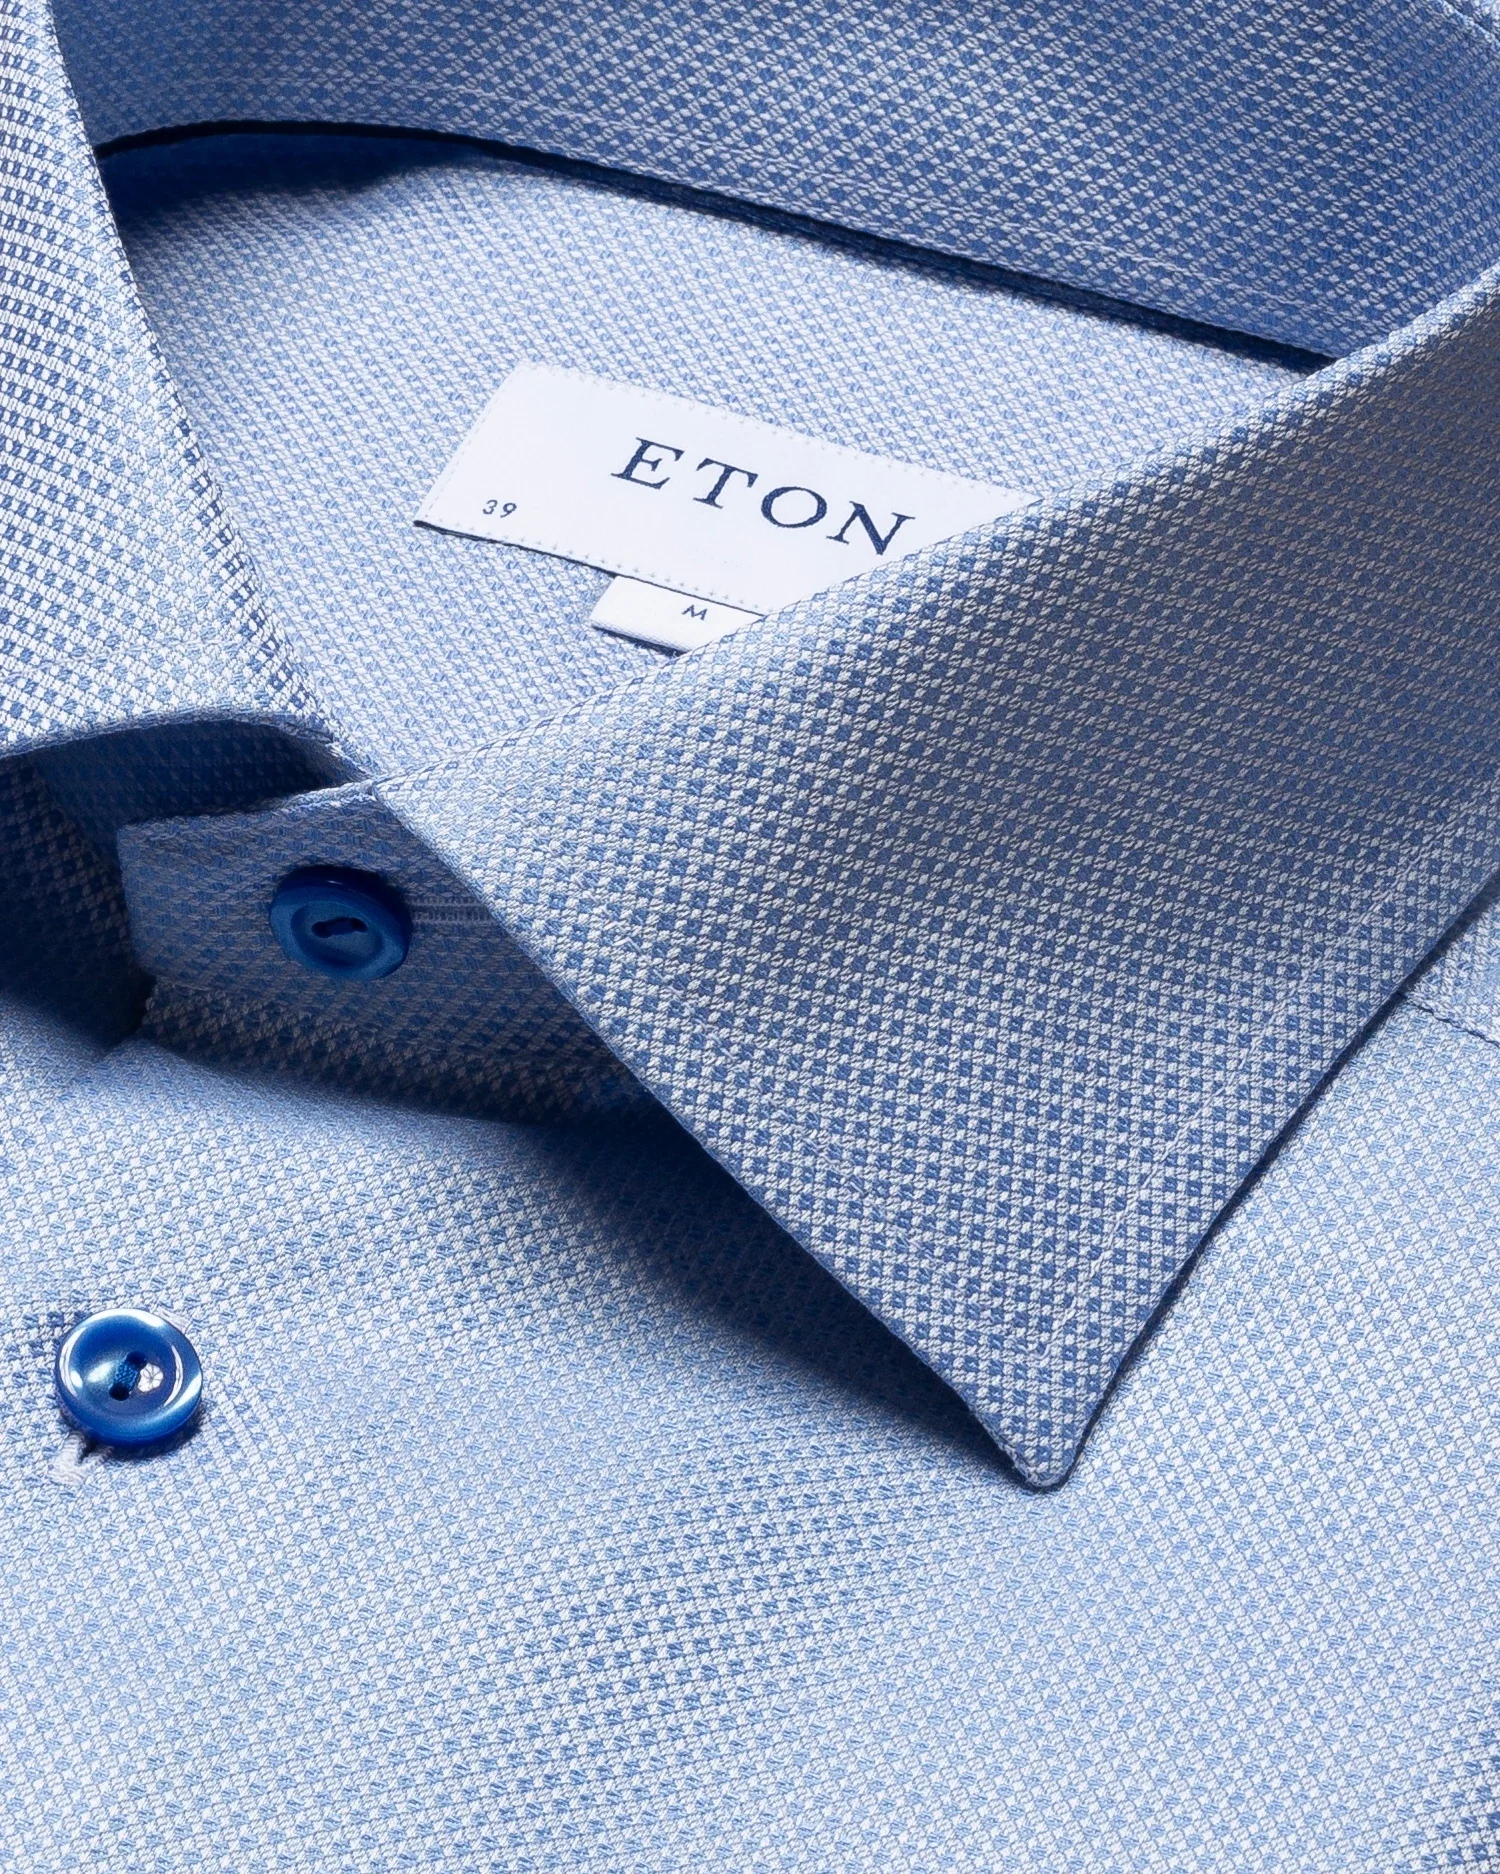 Eton - blue cotton linen shirt short sleeve